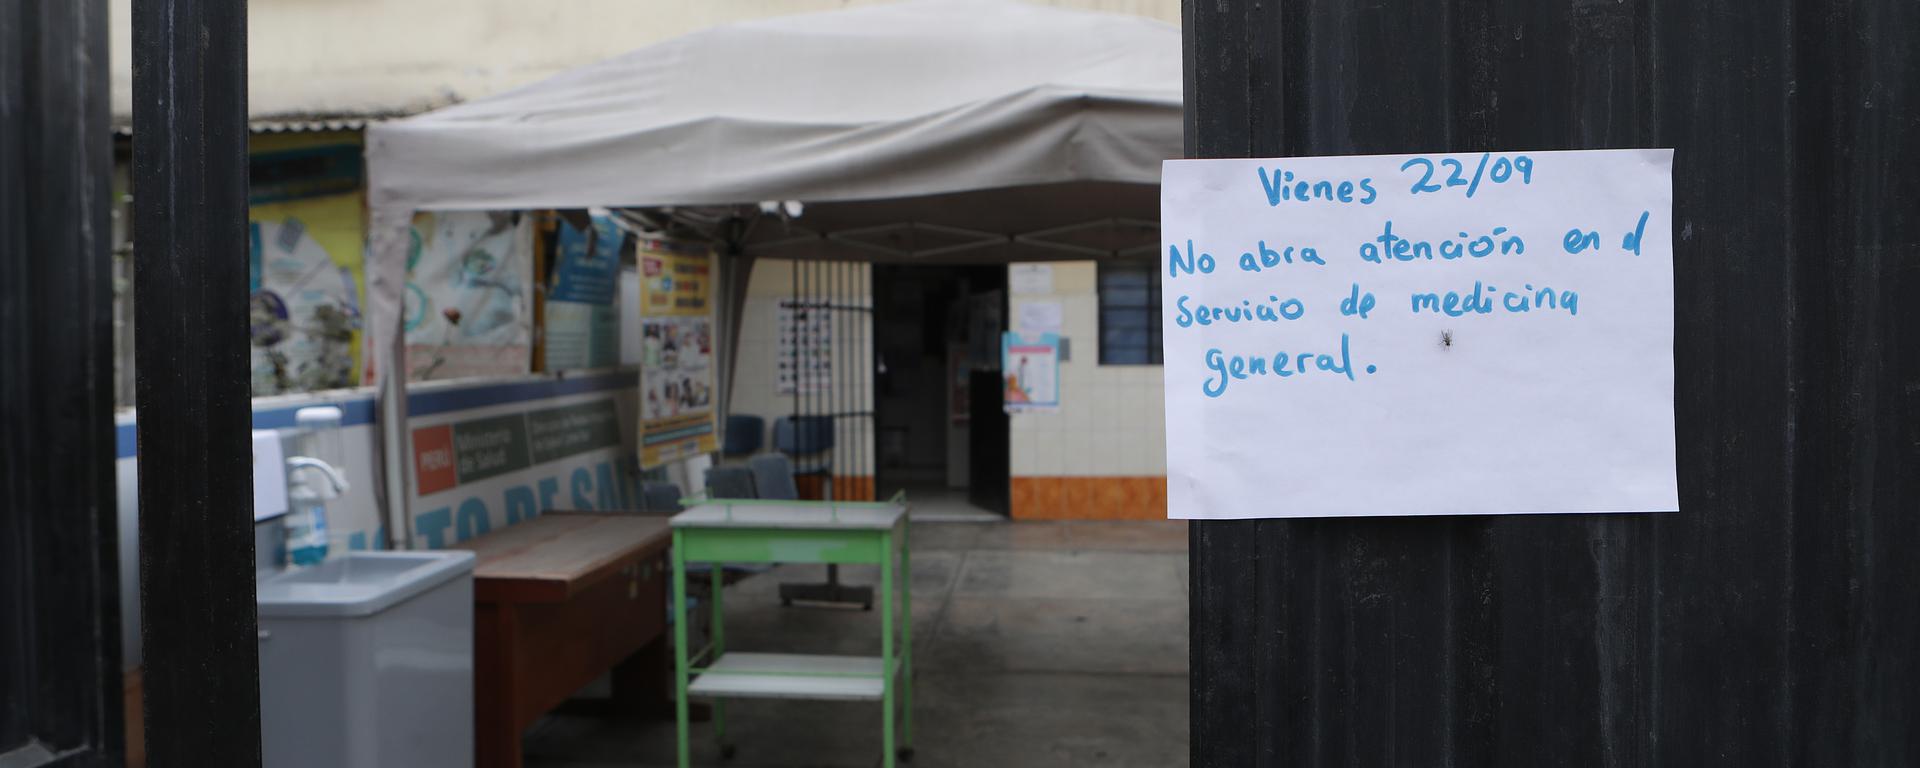 Doctores ausentes y escasez de medicamentos: seis postas y centros de salud en Lima Sur con deficiencias de atención | CRÓNICA